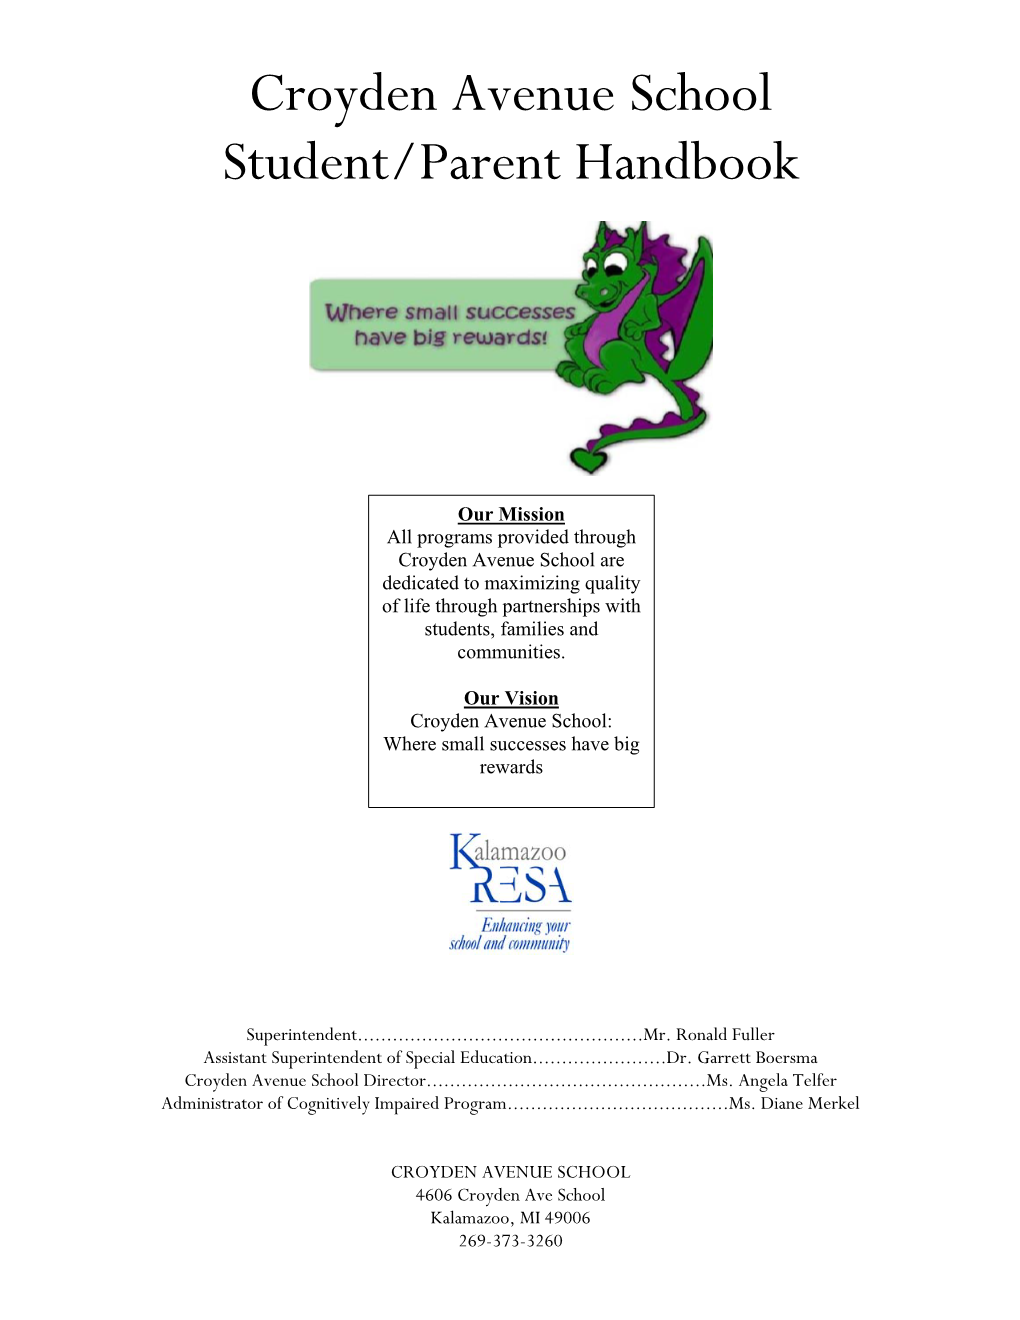 Croyden Avenue School Student/Parent Handbook